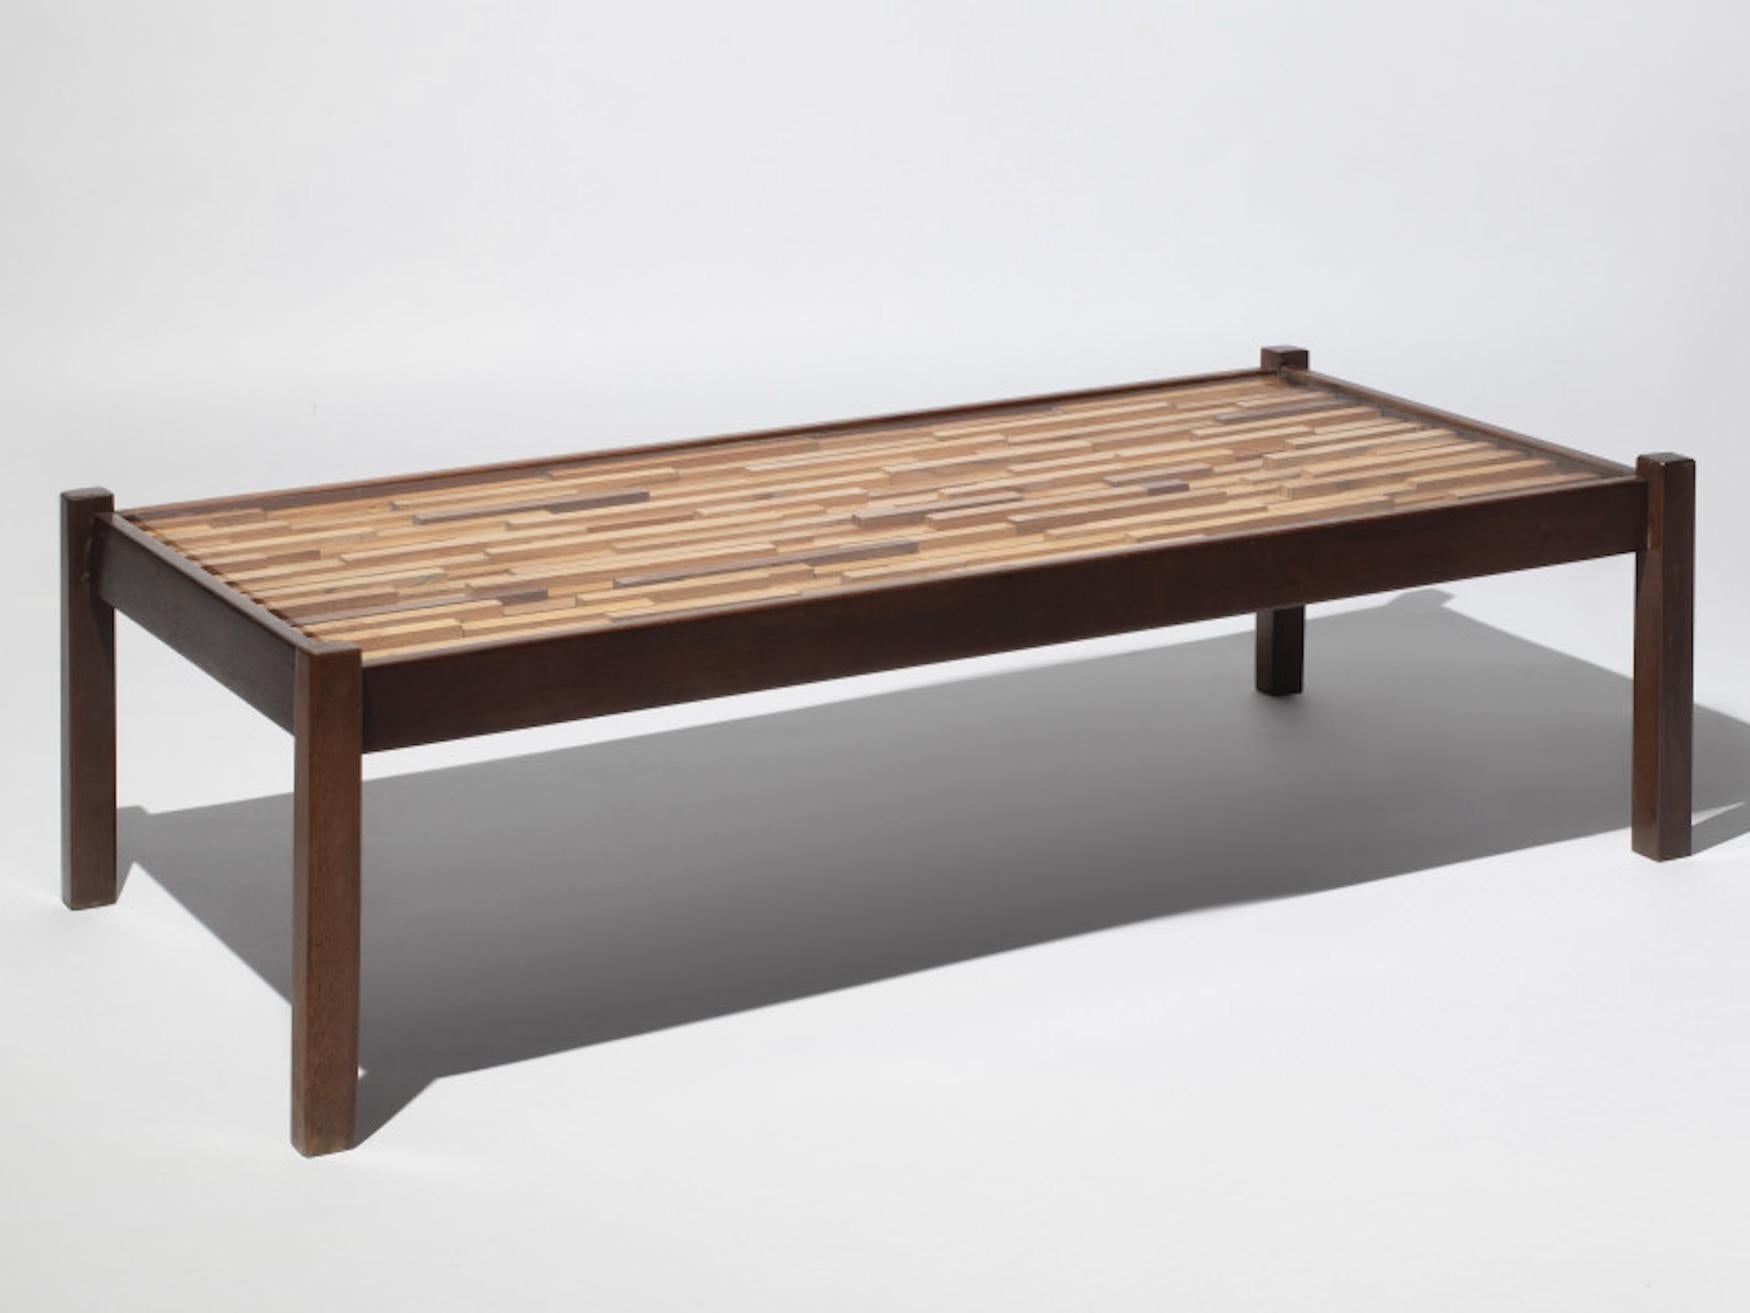 Der Tisch von Percival Lafer ist ein bemerkenswertes Stück Design, das die Ästhetik der 1970er Jahre verkörpert. Dieser Couchtisch aus Patchwork-Holz und Glas ist eine harmonische Mischung aus natürlichen Materialien und modernen Oberflächen.

Die